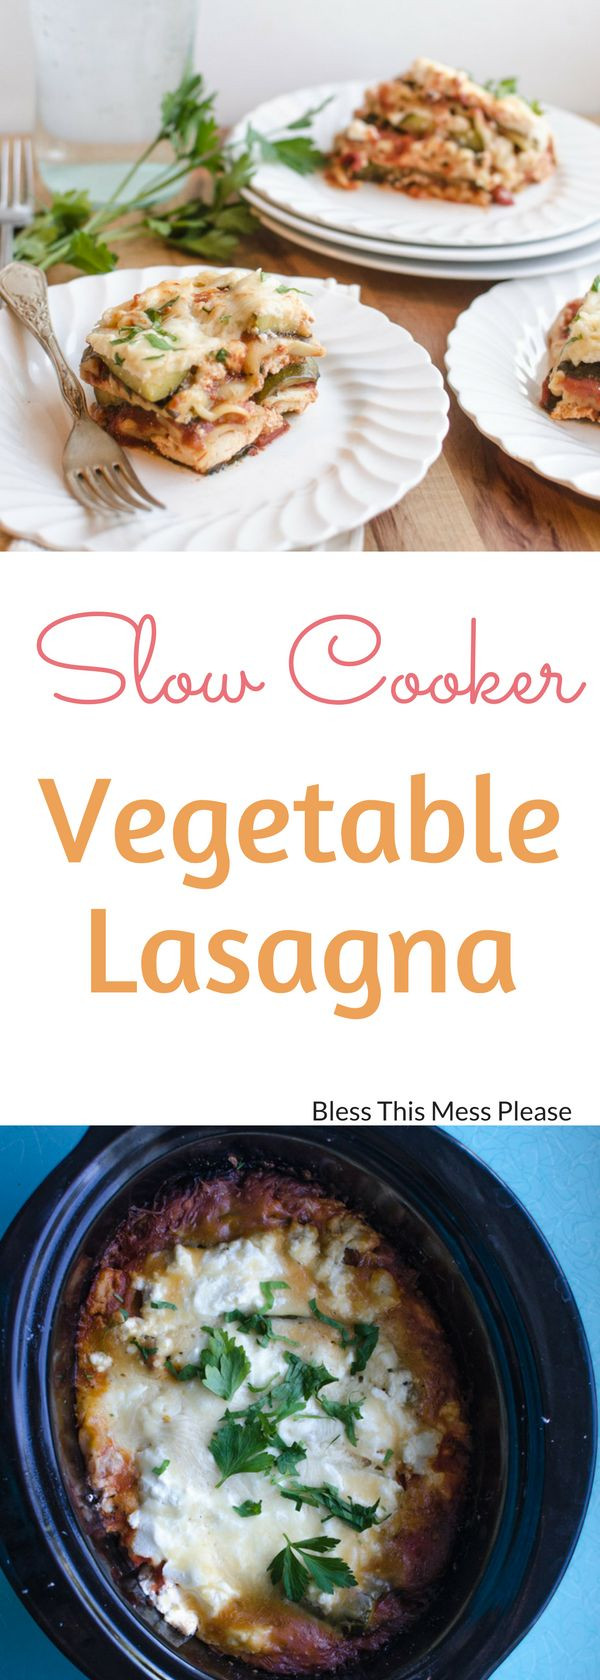 Healthy Slow Cooker Lasagna
 Healthy Recipes Slow Cooker Ve able Lasagna Health